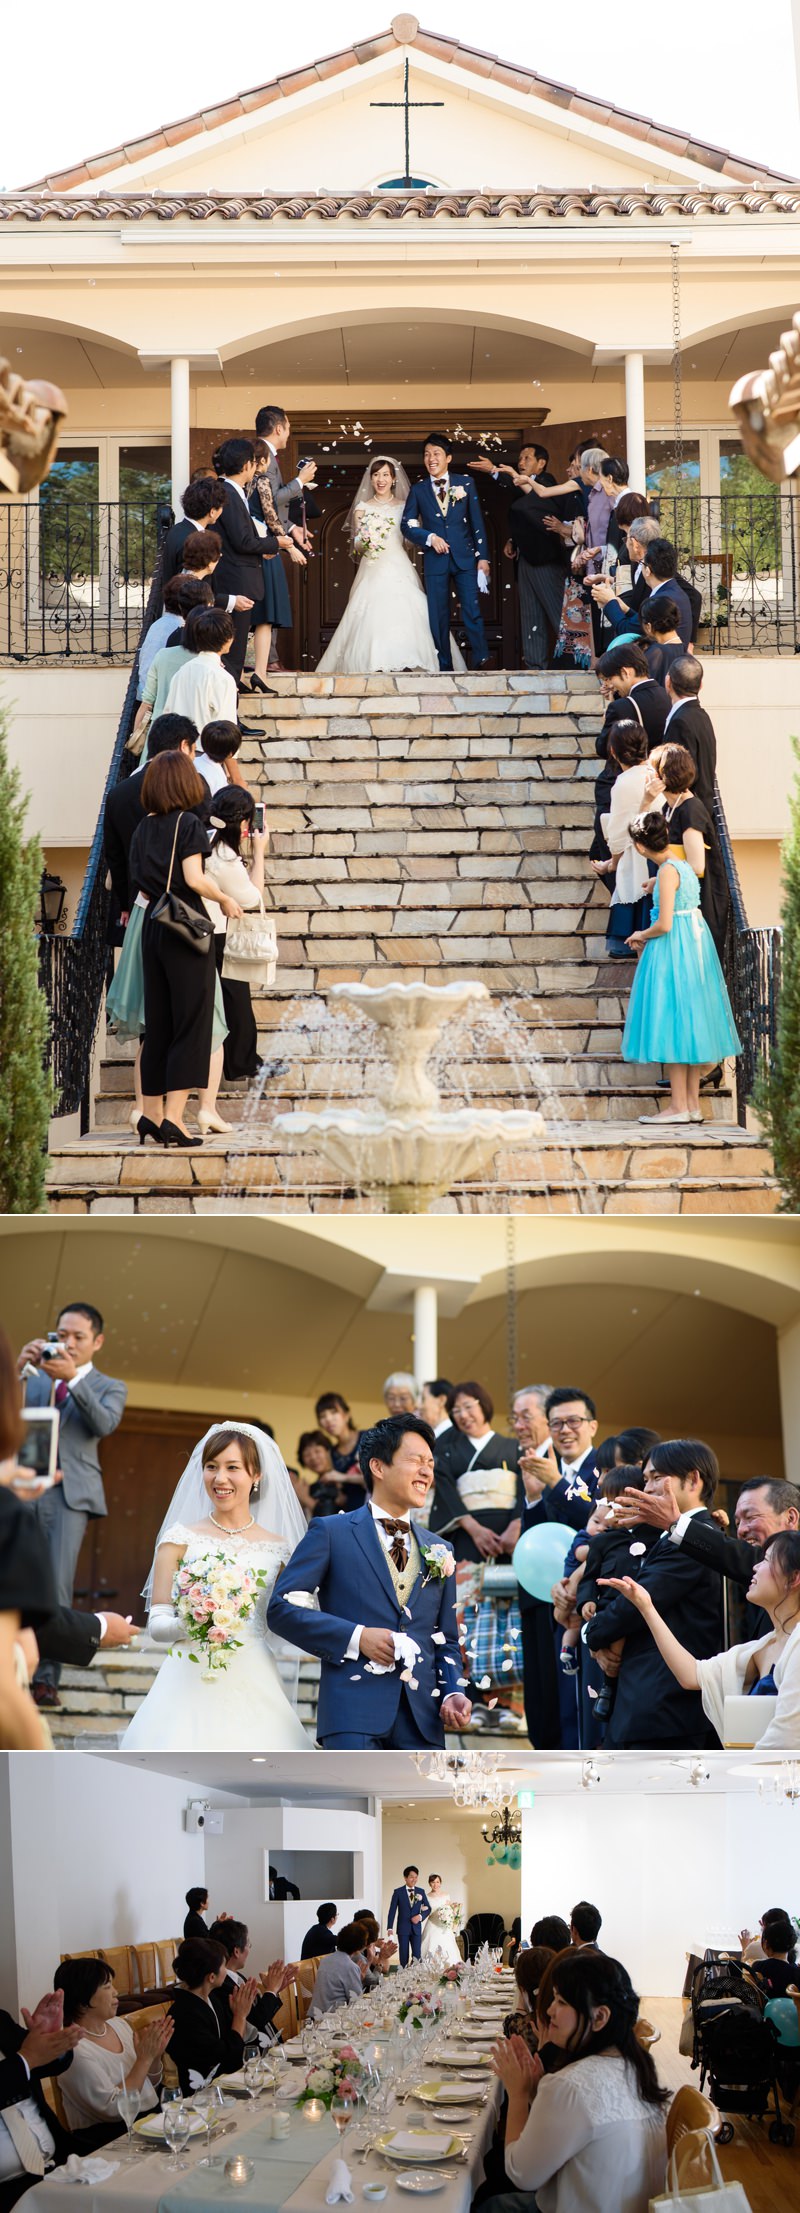 軽井沢での結婚式 Bozphoto And Styles の写真ブログ